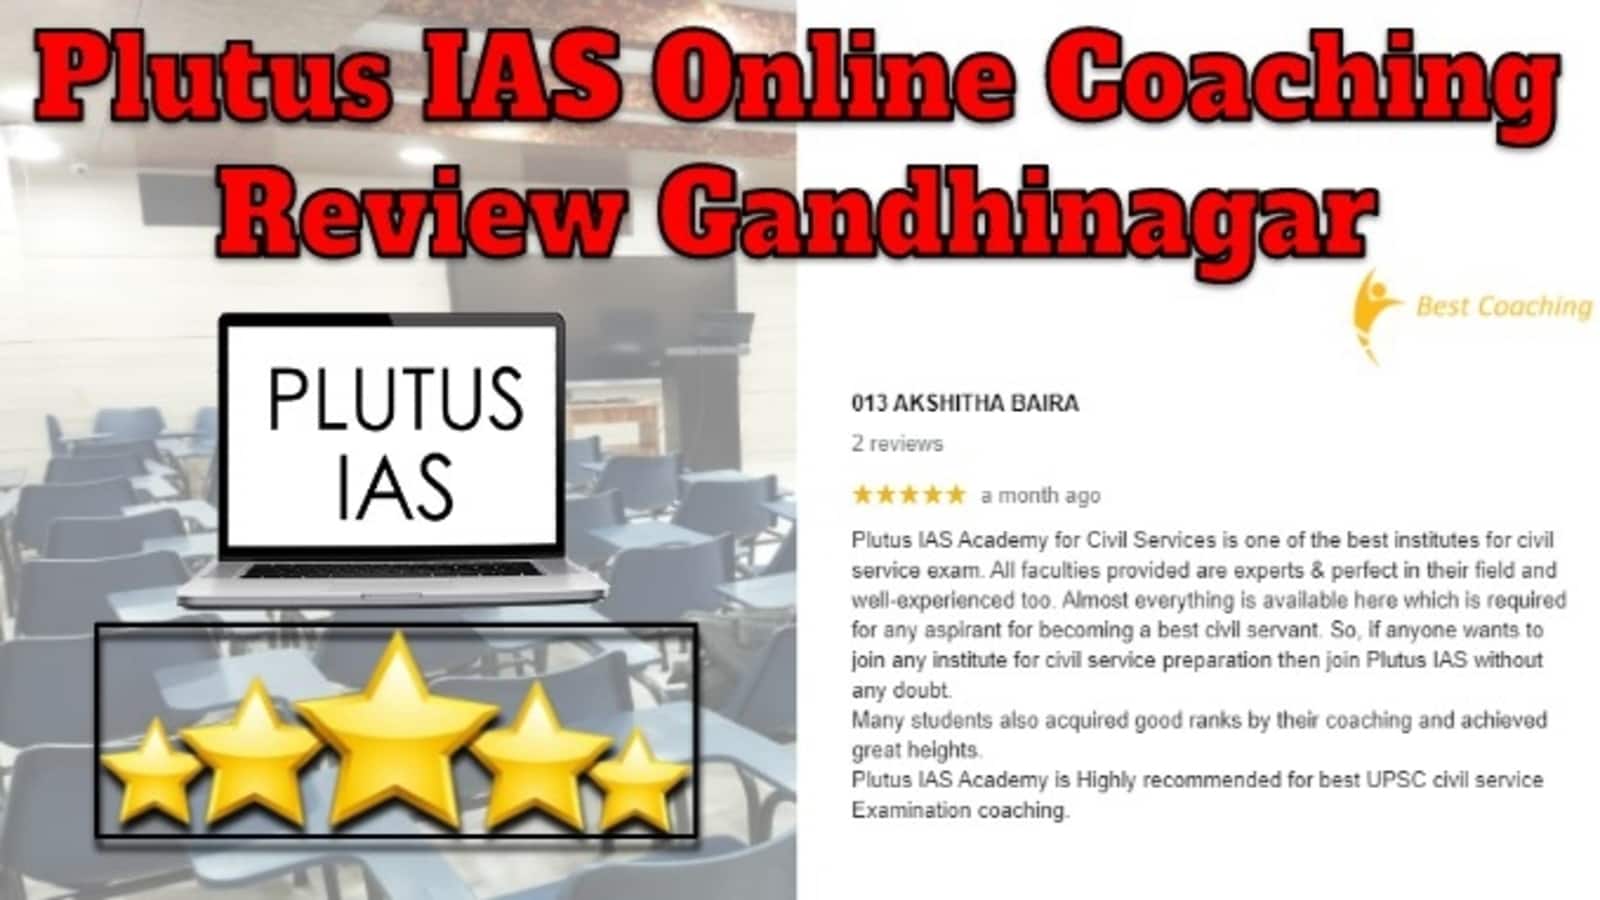 Plutus IAS Online Coaching Review Gandhinagar